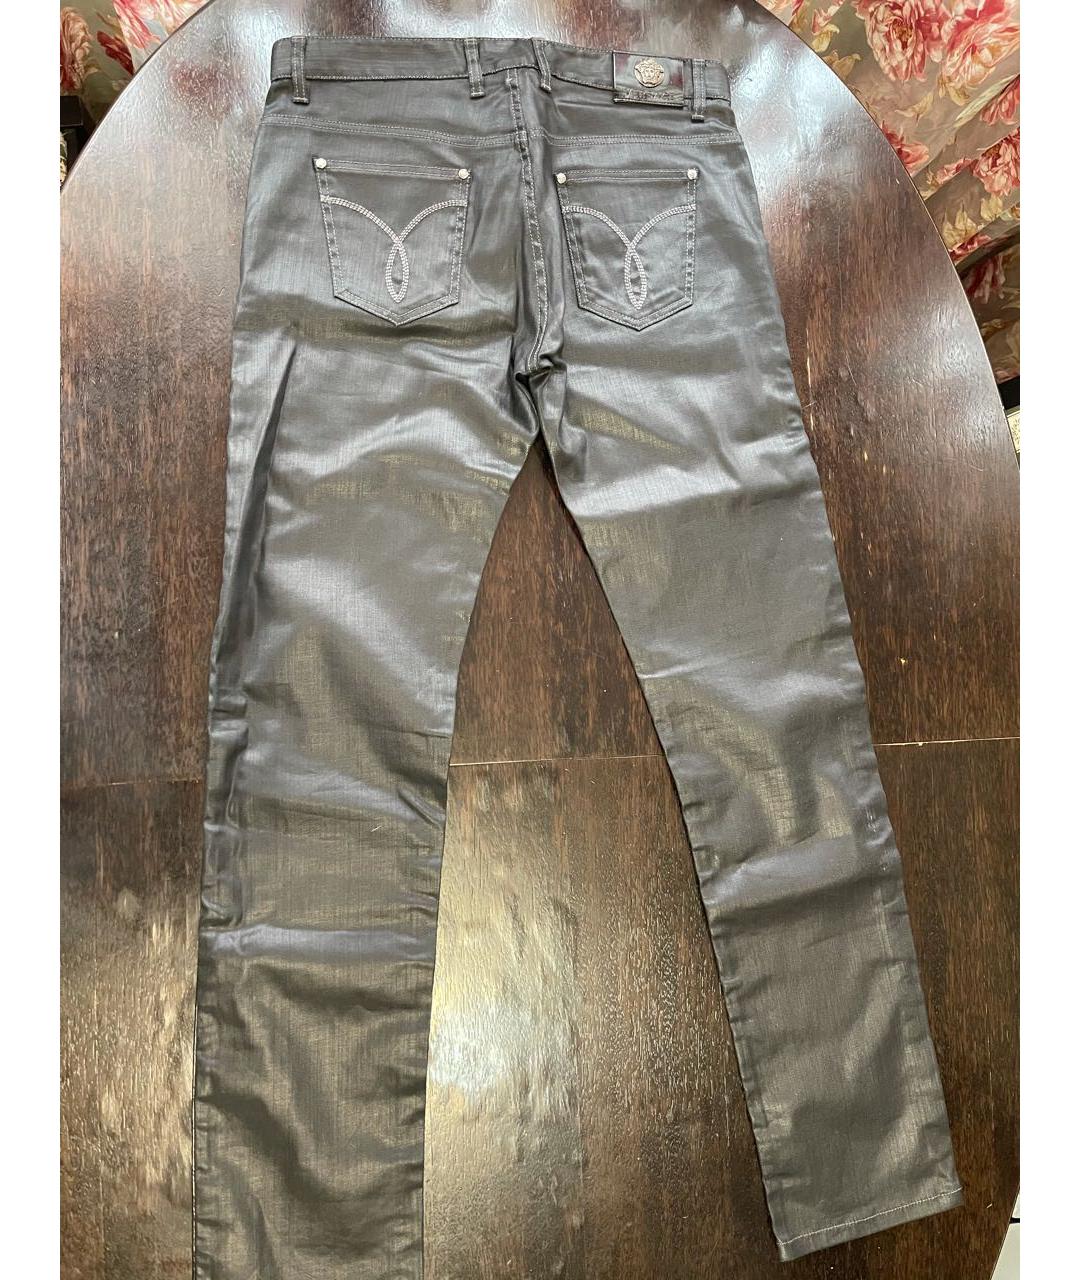 VERSACE Черные хлопко-эластановые прямые джинсы, фото 2